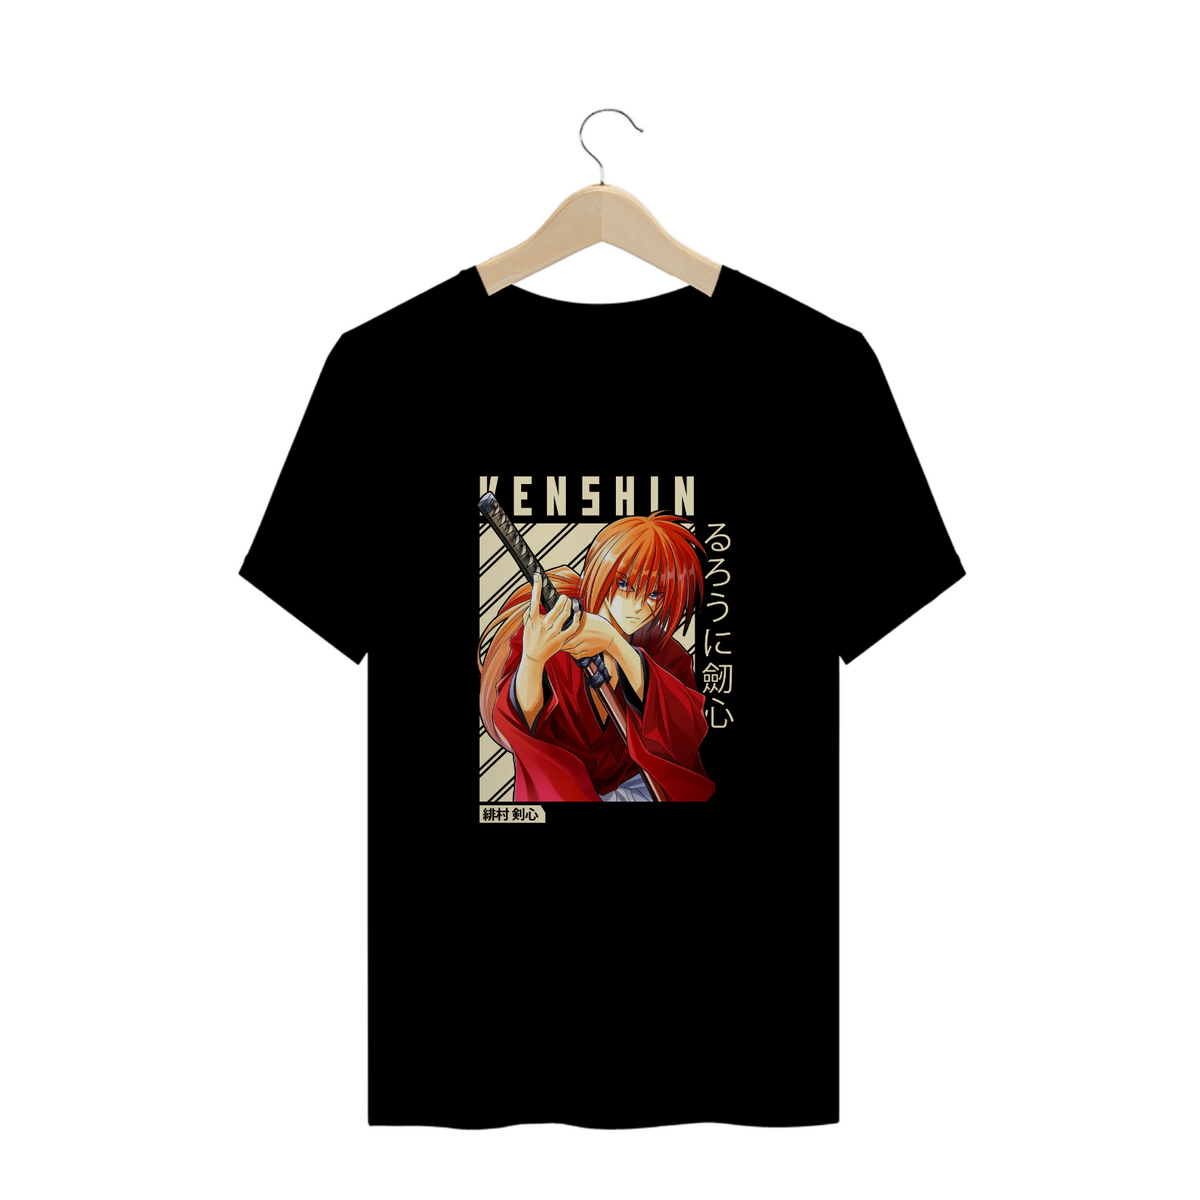 Nome do produto: Camisa Kenshin II